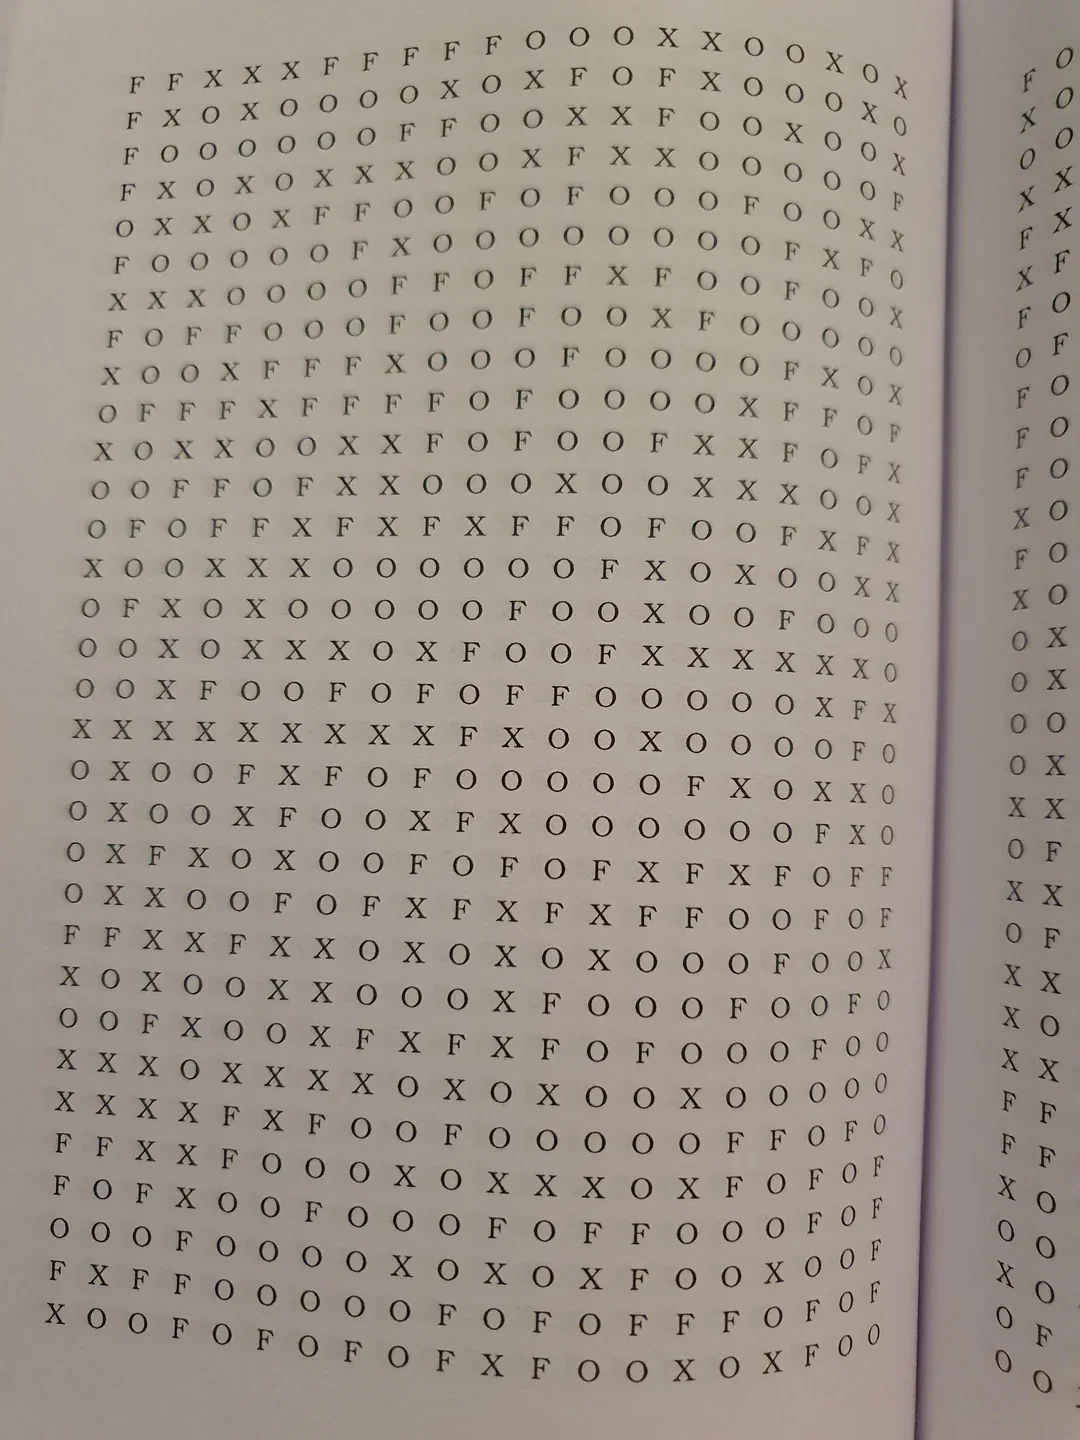 หนังสือปริศนาหาคำศัพท์ Fox จาก 200 หน้า